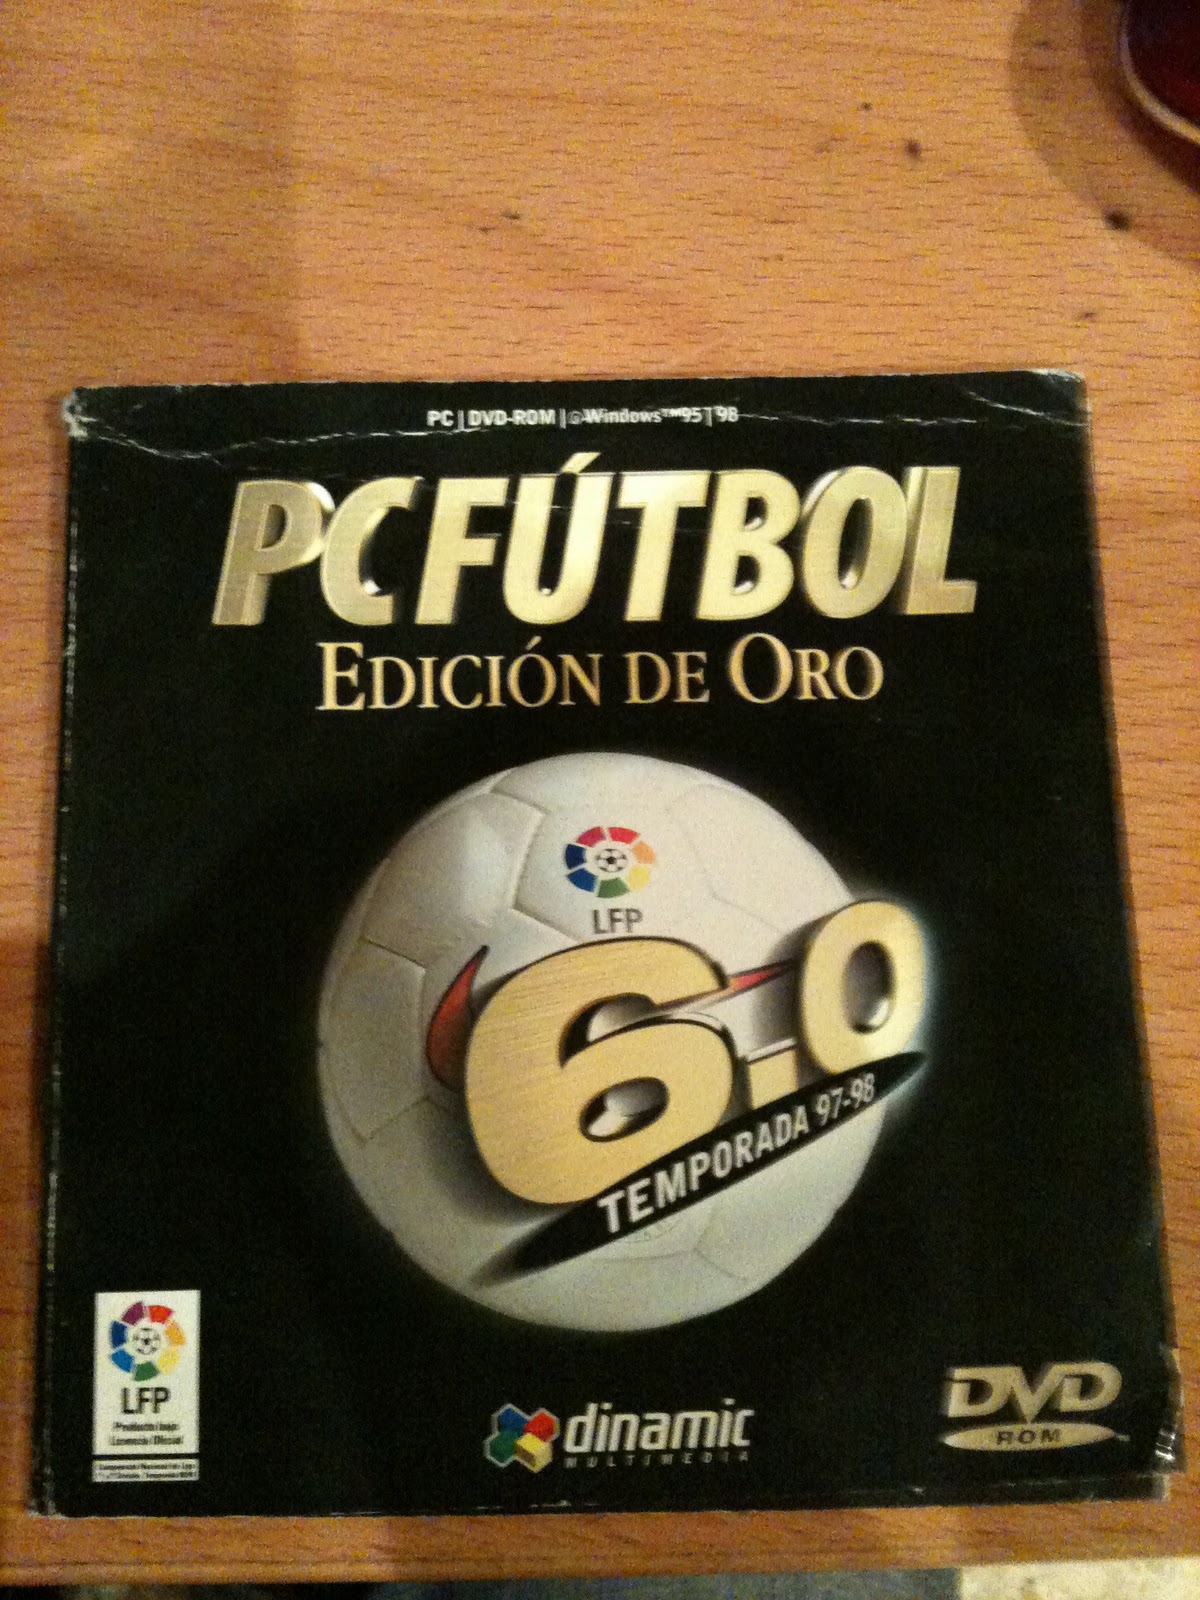 Pc futbol 5.0 edicion oro portable